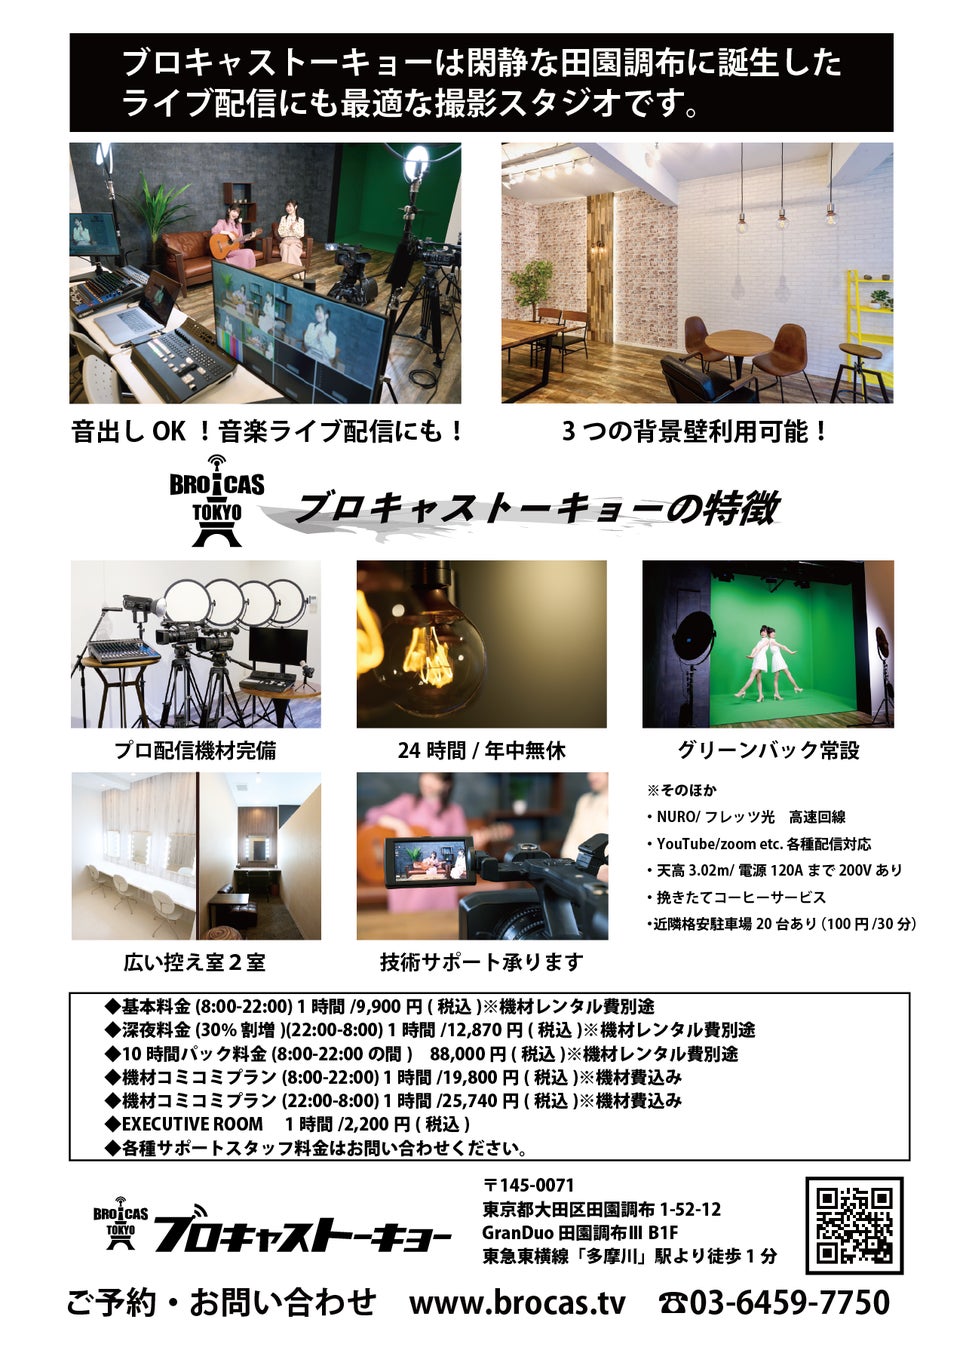 ライブコマース配信スタジオ「ブロキャストーキョー」6月末で営業終了。スタジオ0円譲渡を発表